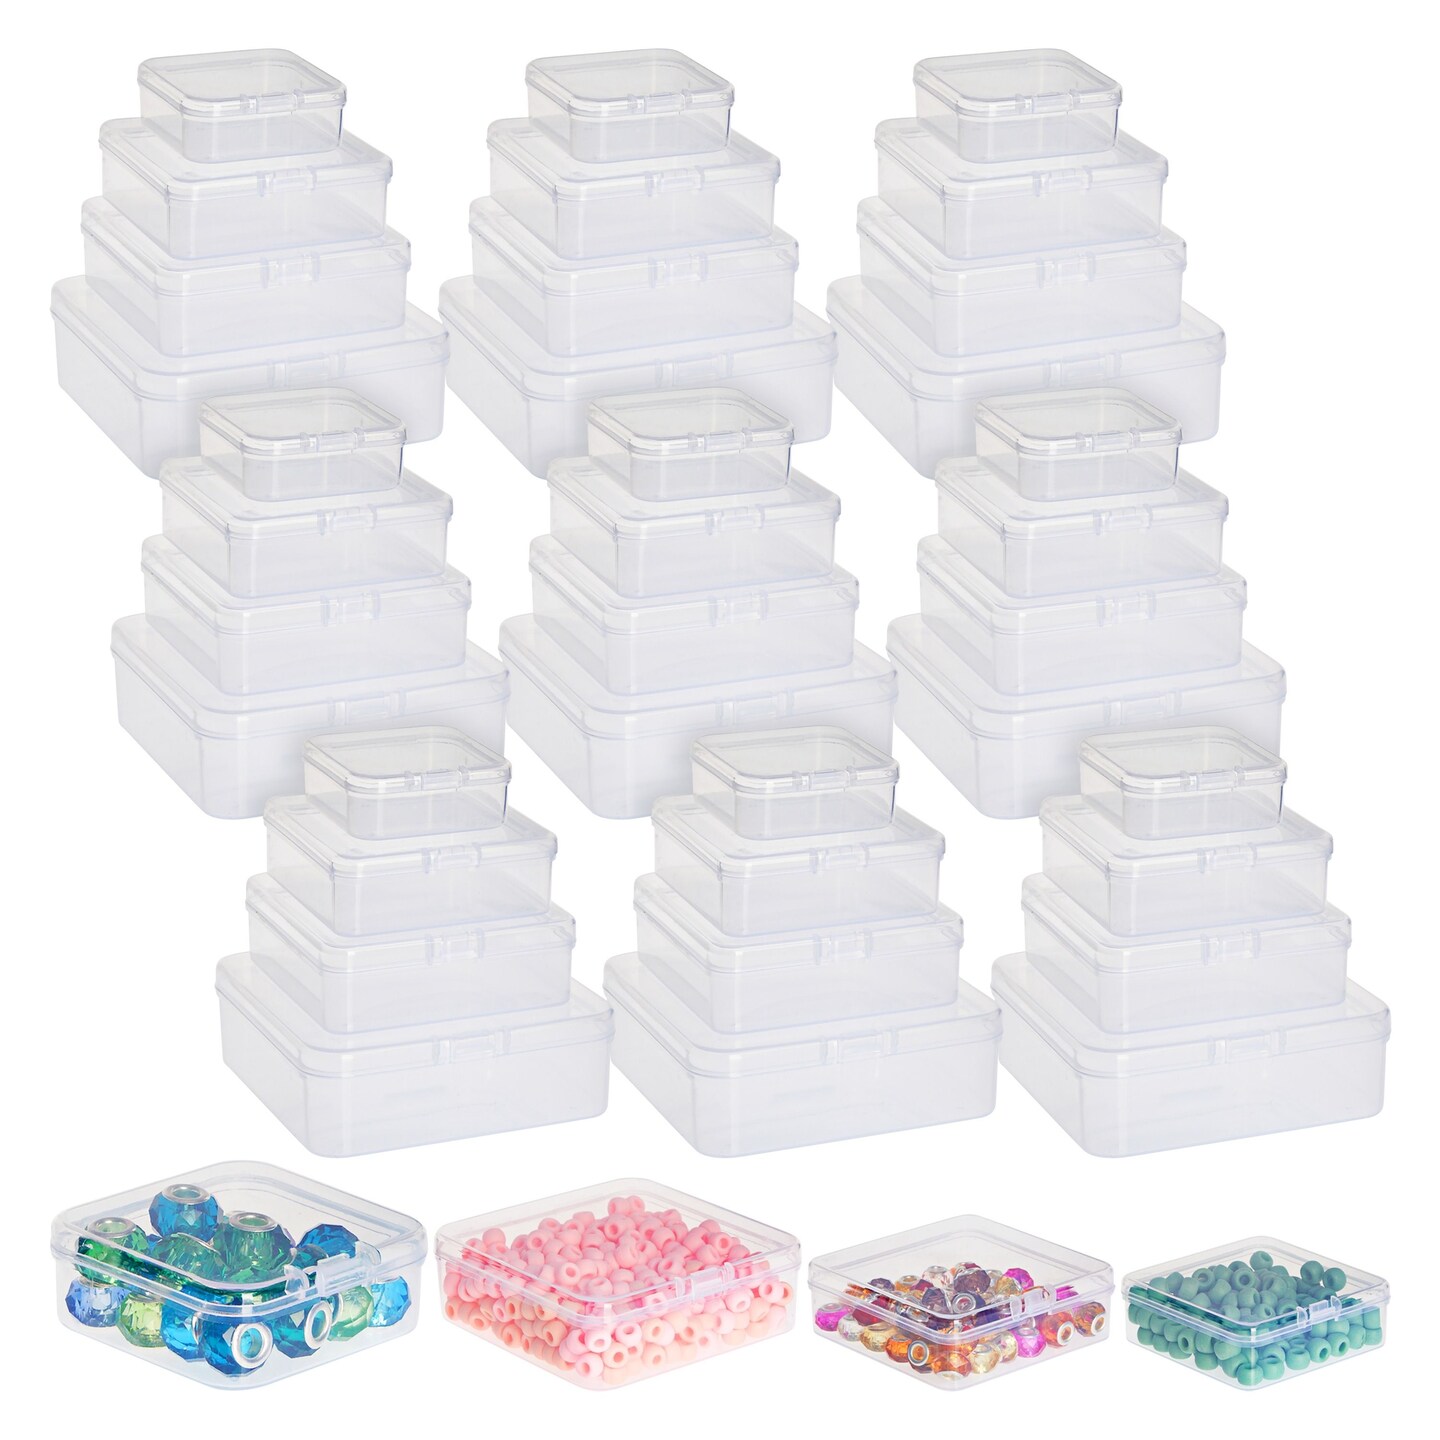 Efficient & Durable Plastic Organizers